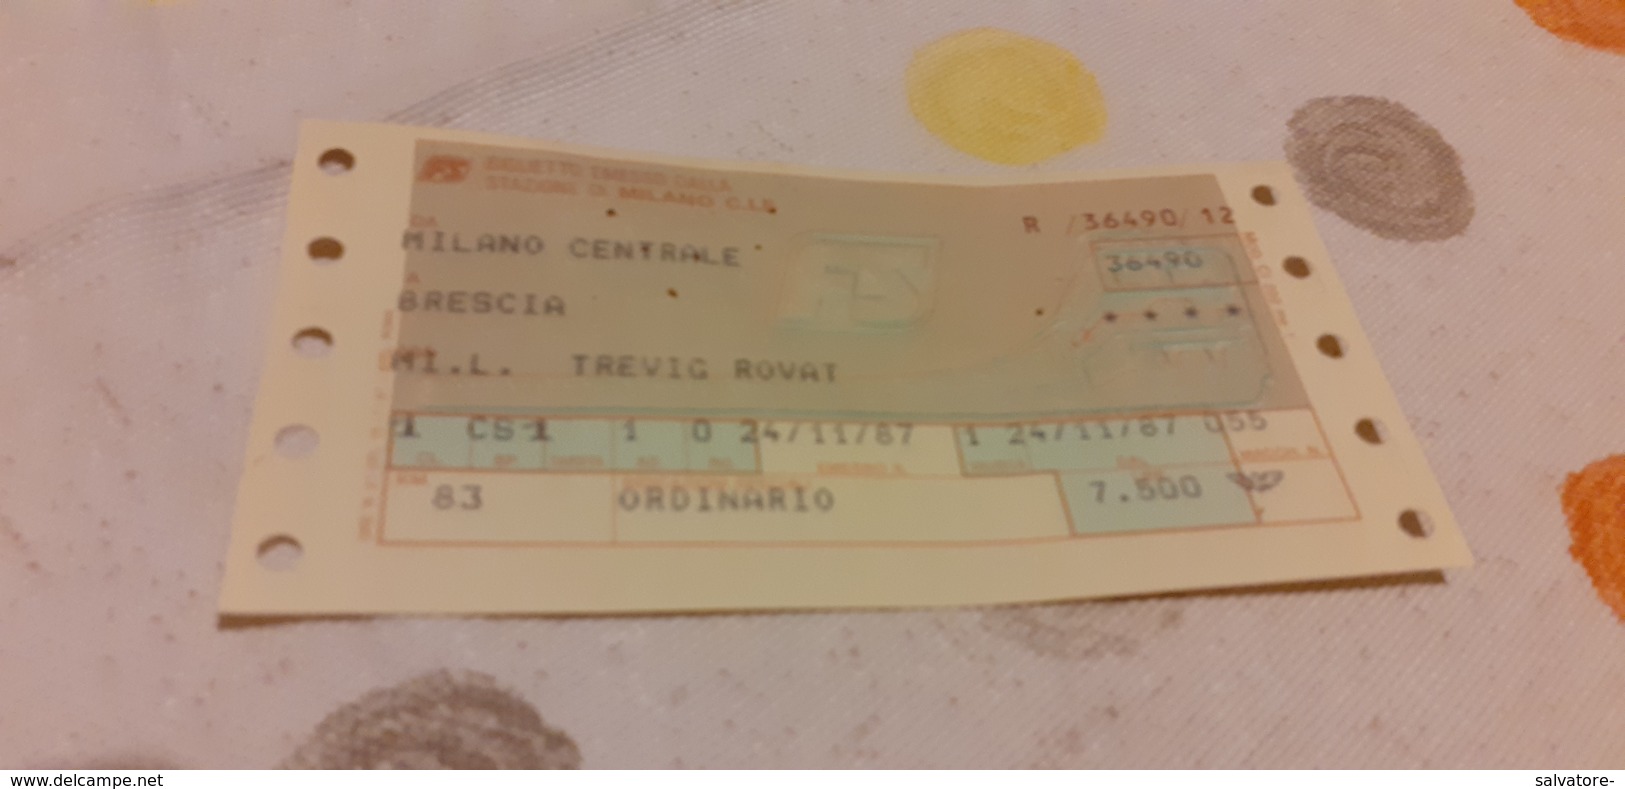 BIGLIETTO TRENO DA MILANO CENTRALE A BRESCIA 1987 - Europe